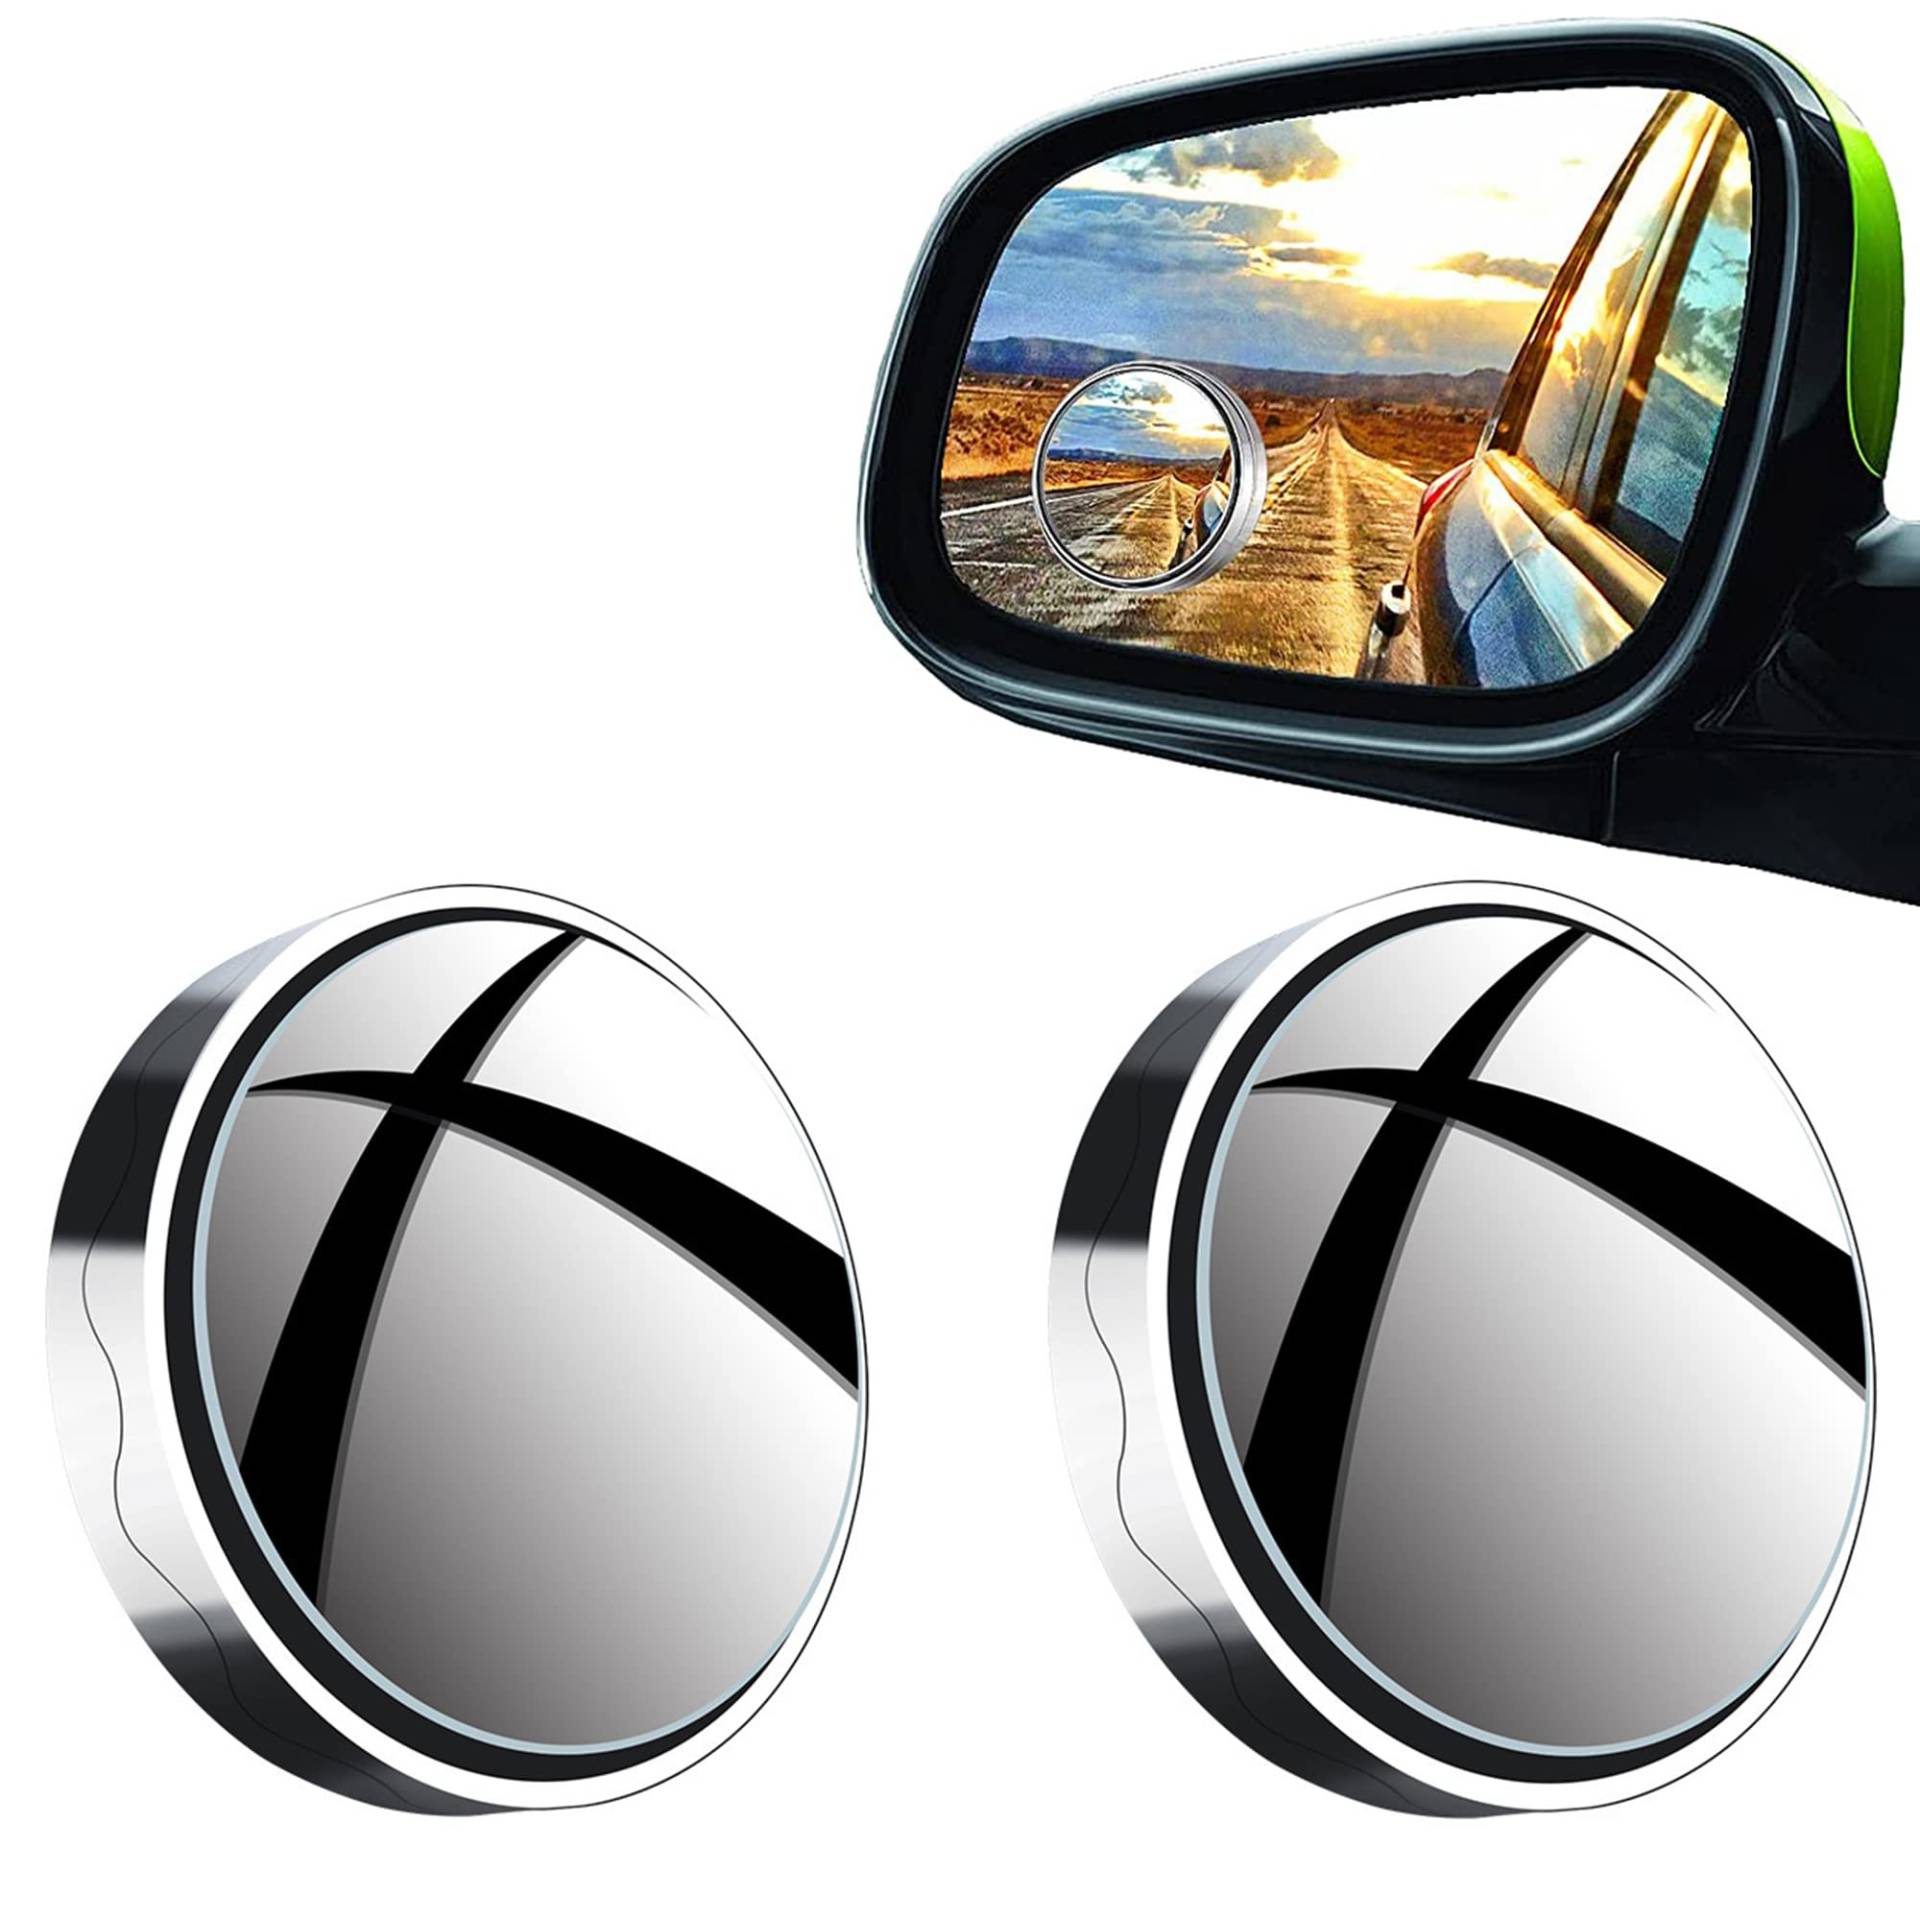 360 Degree Adjustable Wide Angle Side Mirrors Toter Winkel Spiegel Universal Blind Spot Rear View Mirror Auto Blind Spot Spiegel für Autos, LKWs, SUVs, Verkehrssicherheit – 2 Stück von ALUYF